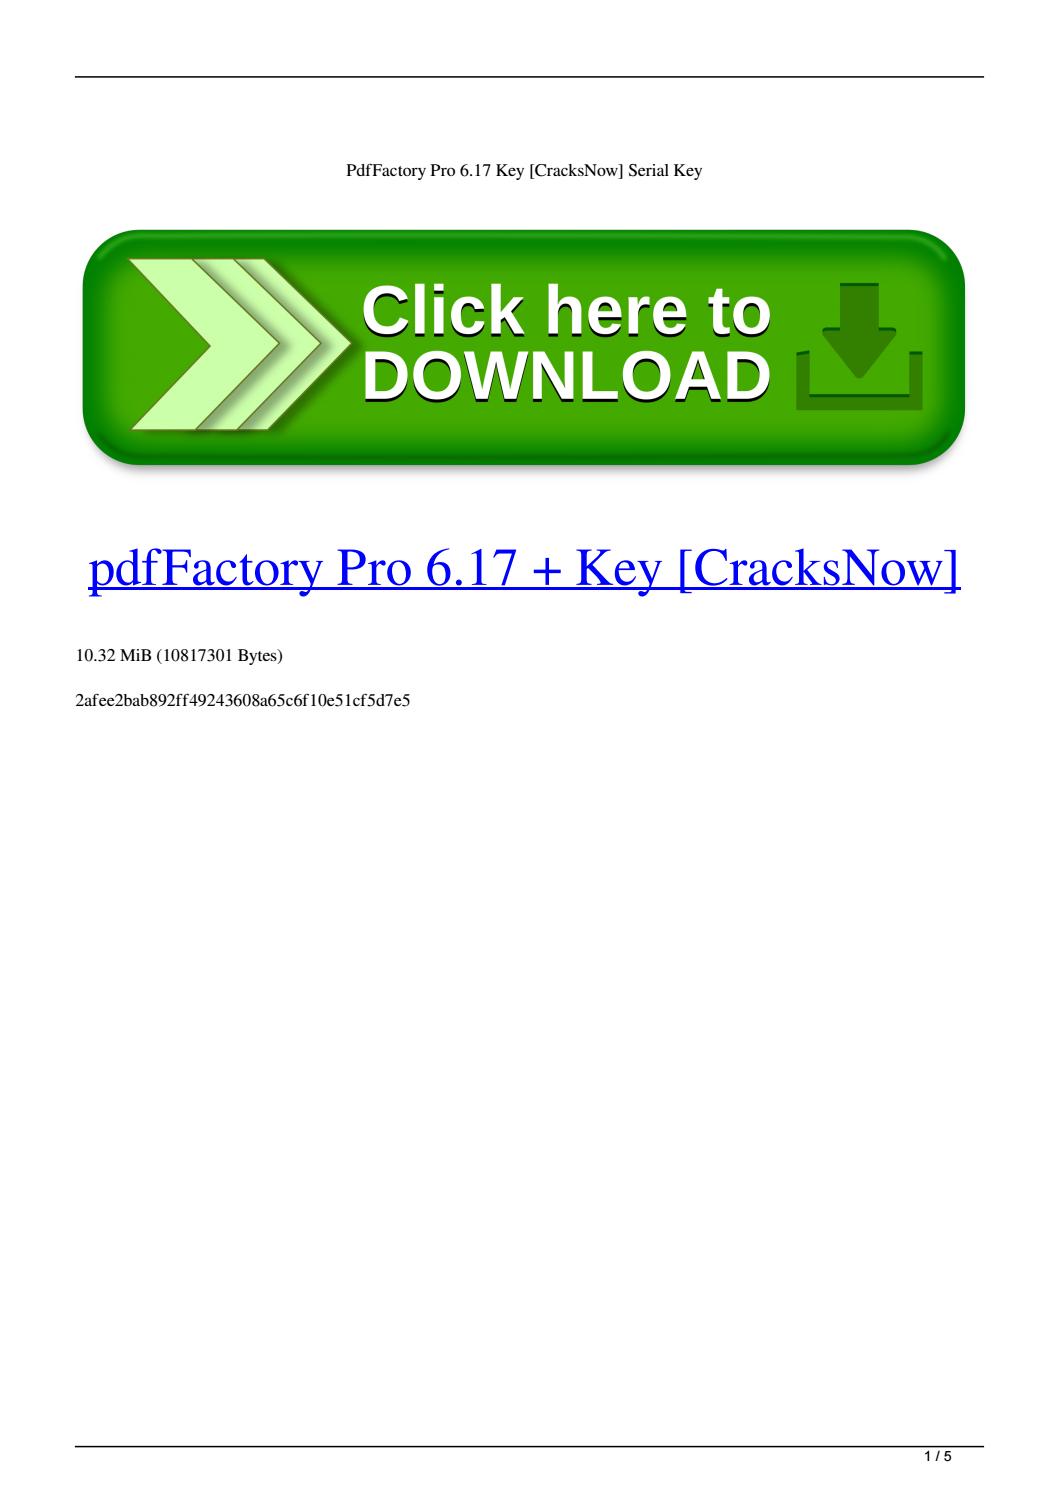 pdffactory key